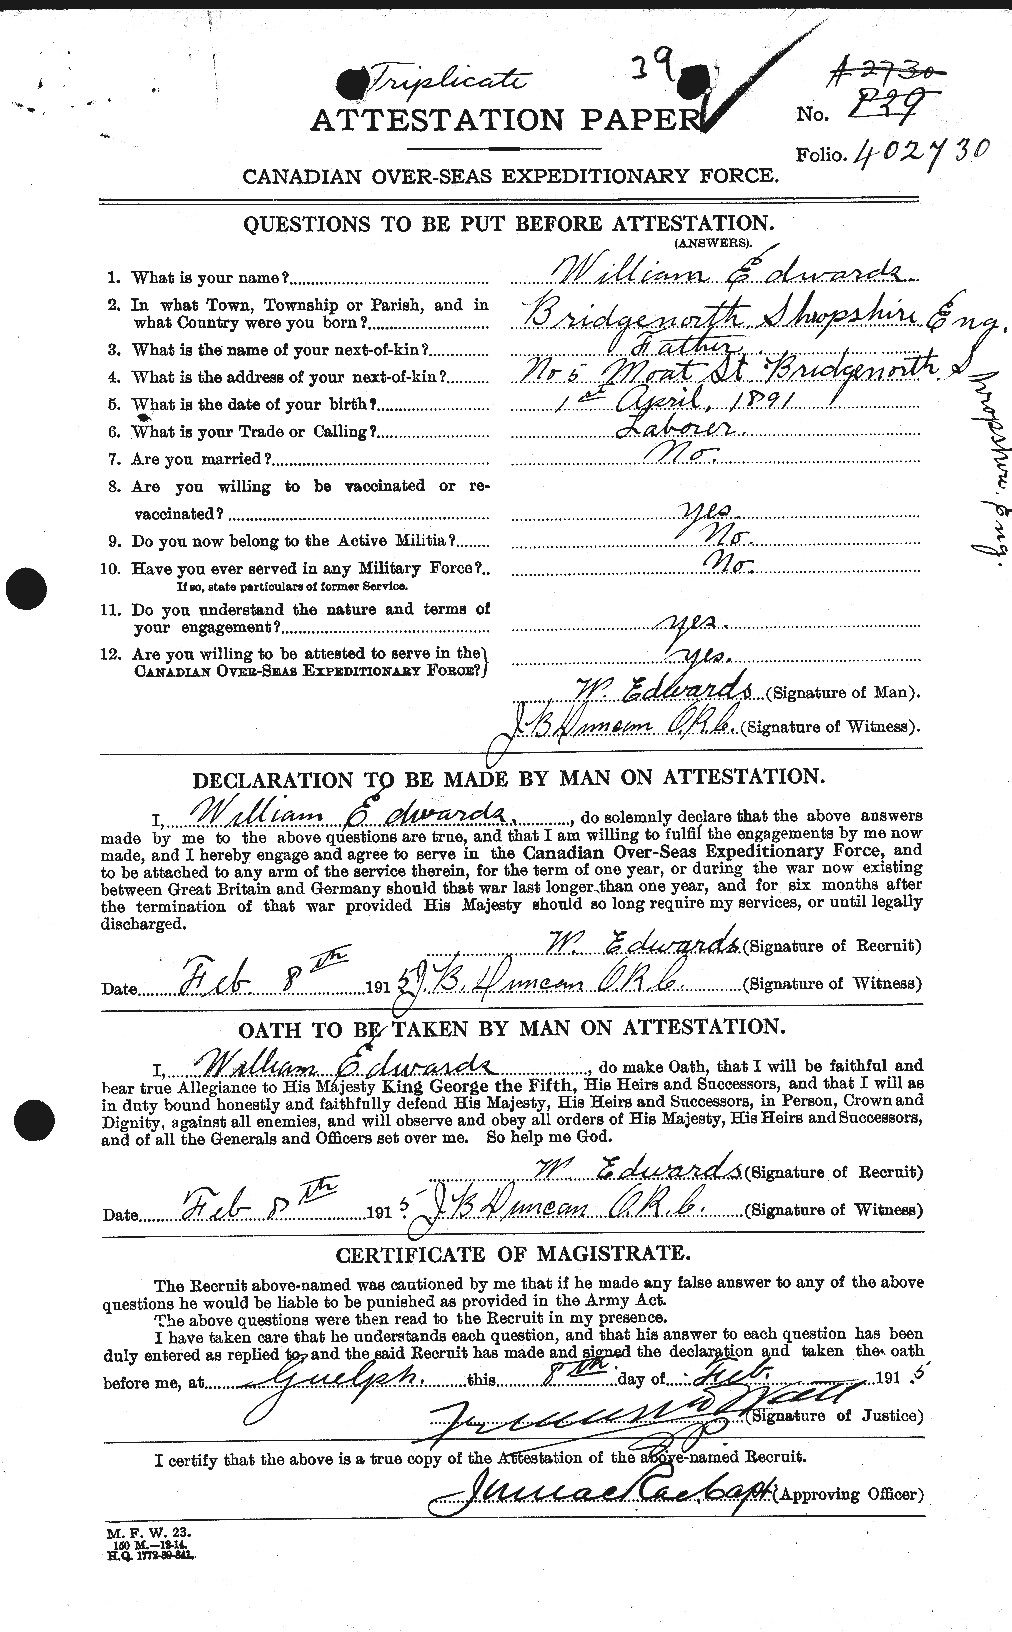 Dossiers du Personnel de la Première Guerre mondiale - CEC 310399a